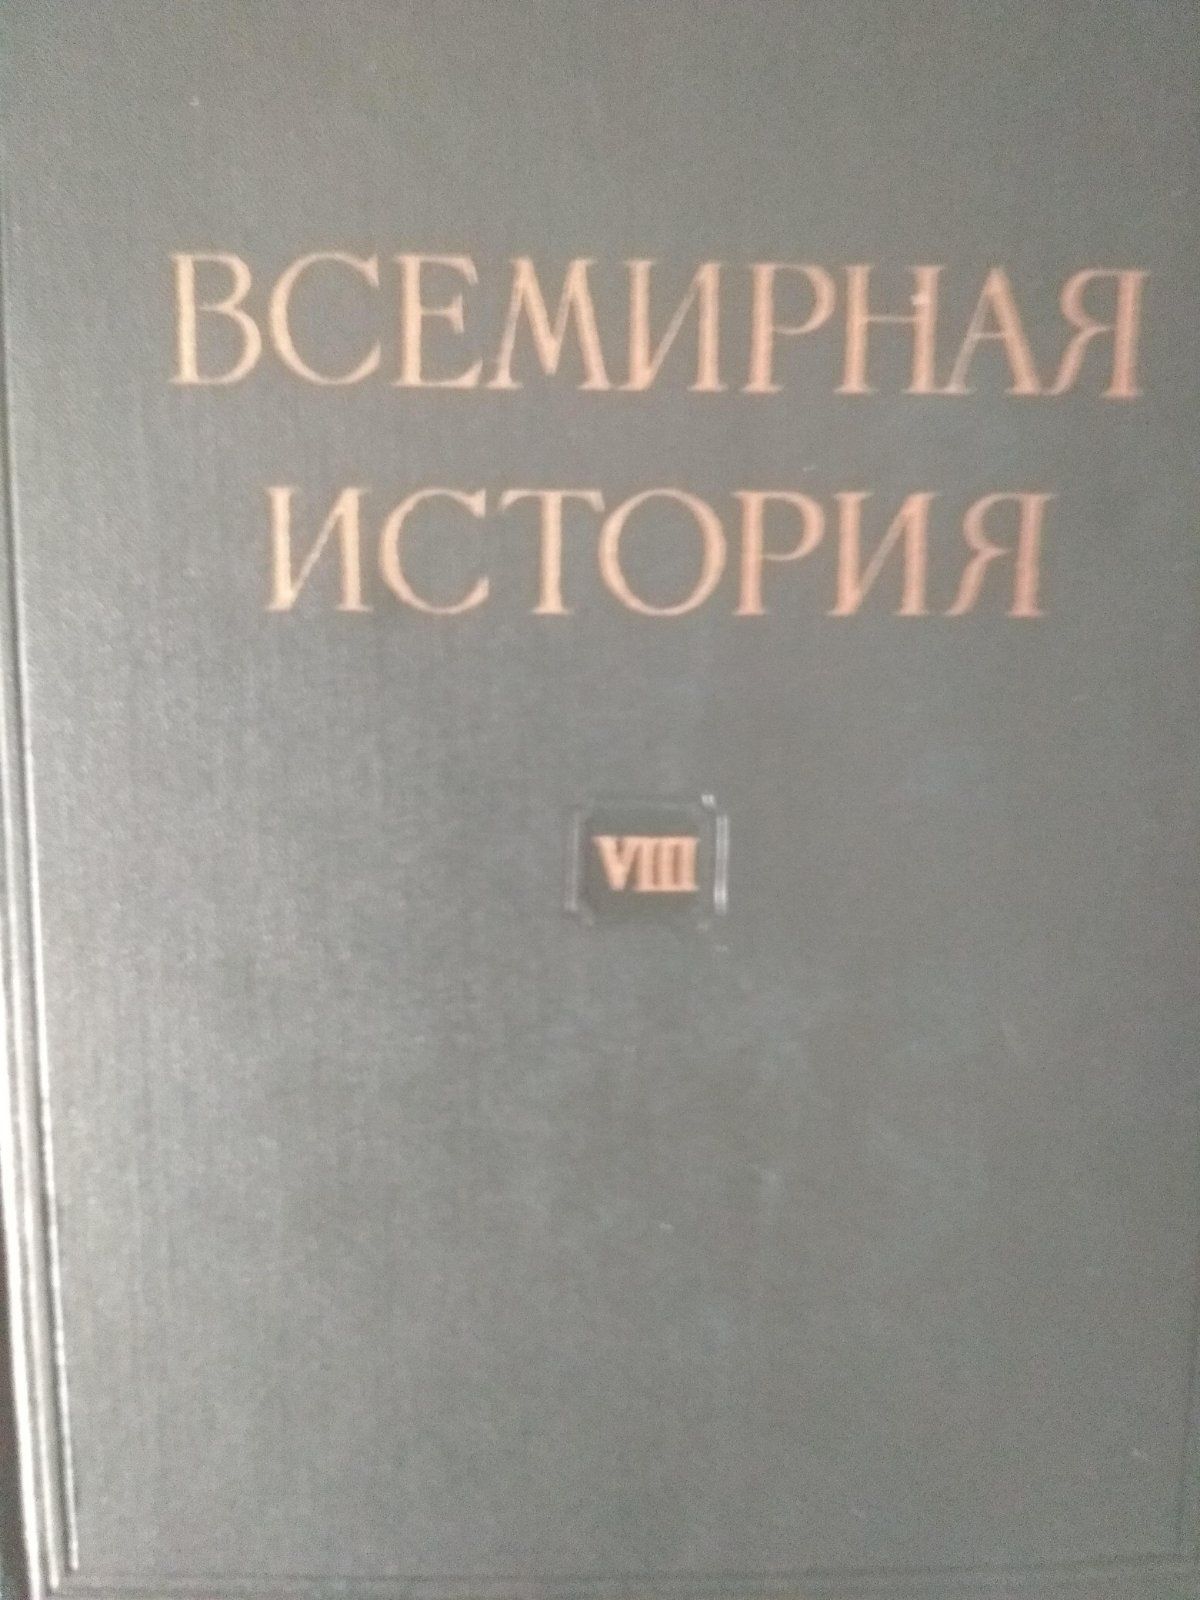 Энциклопедический словари и История русской церкви